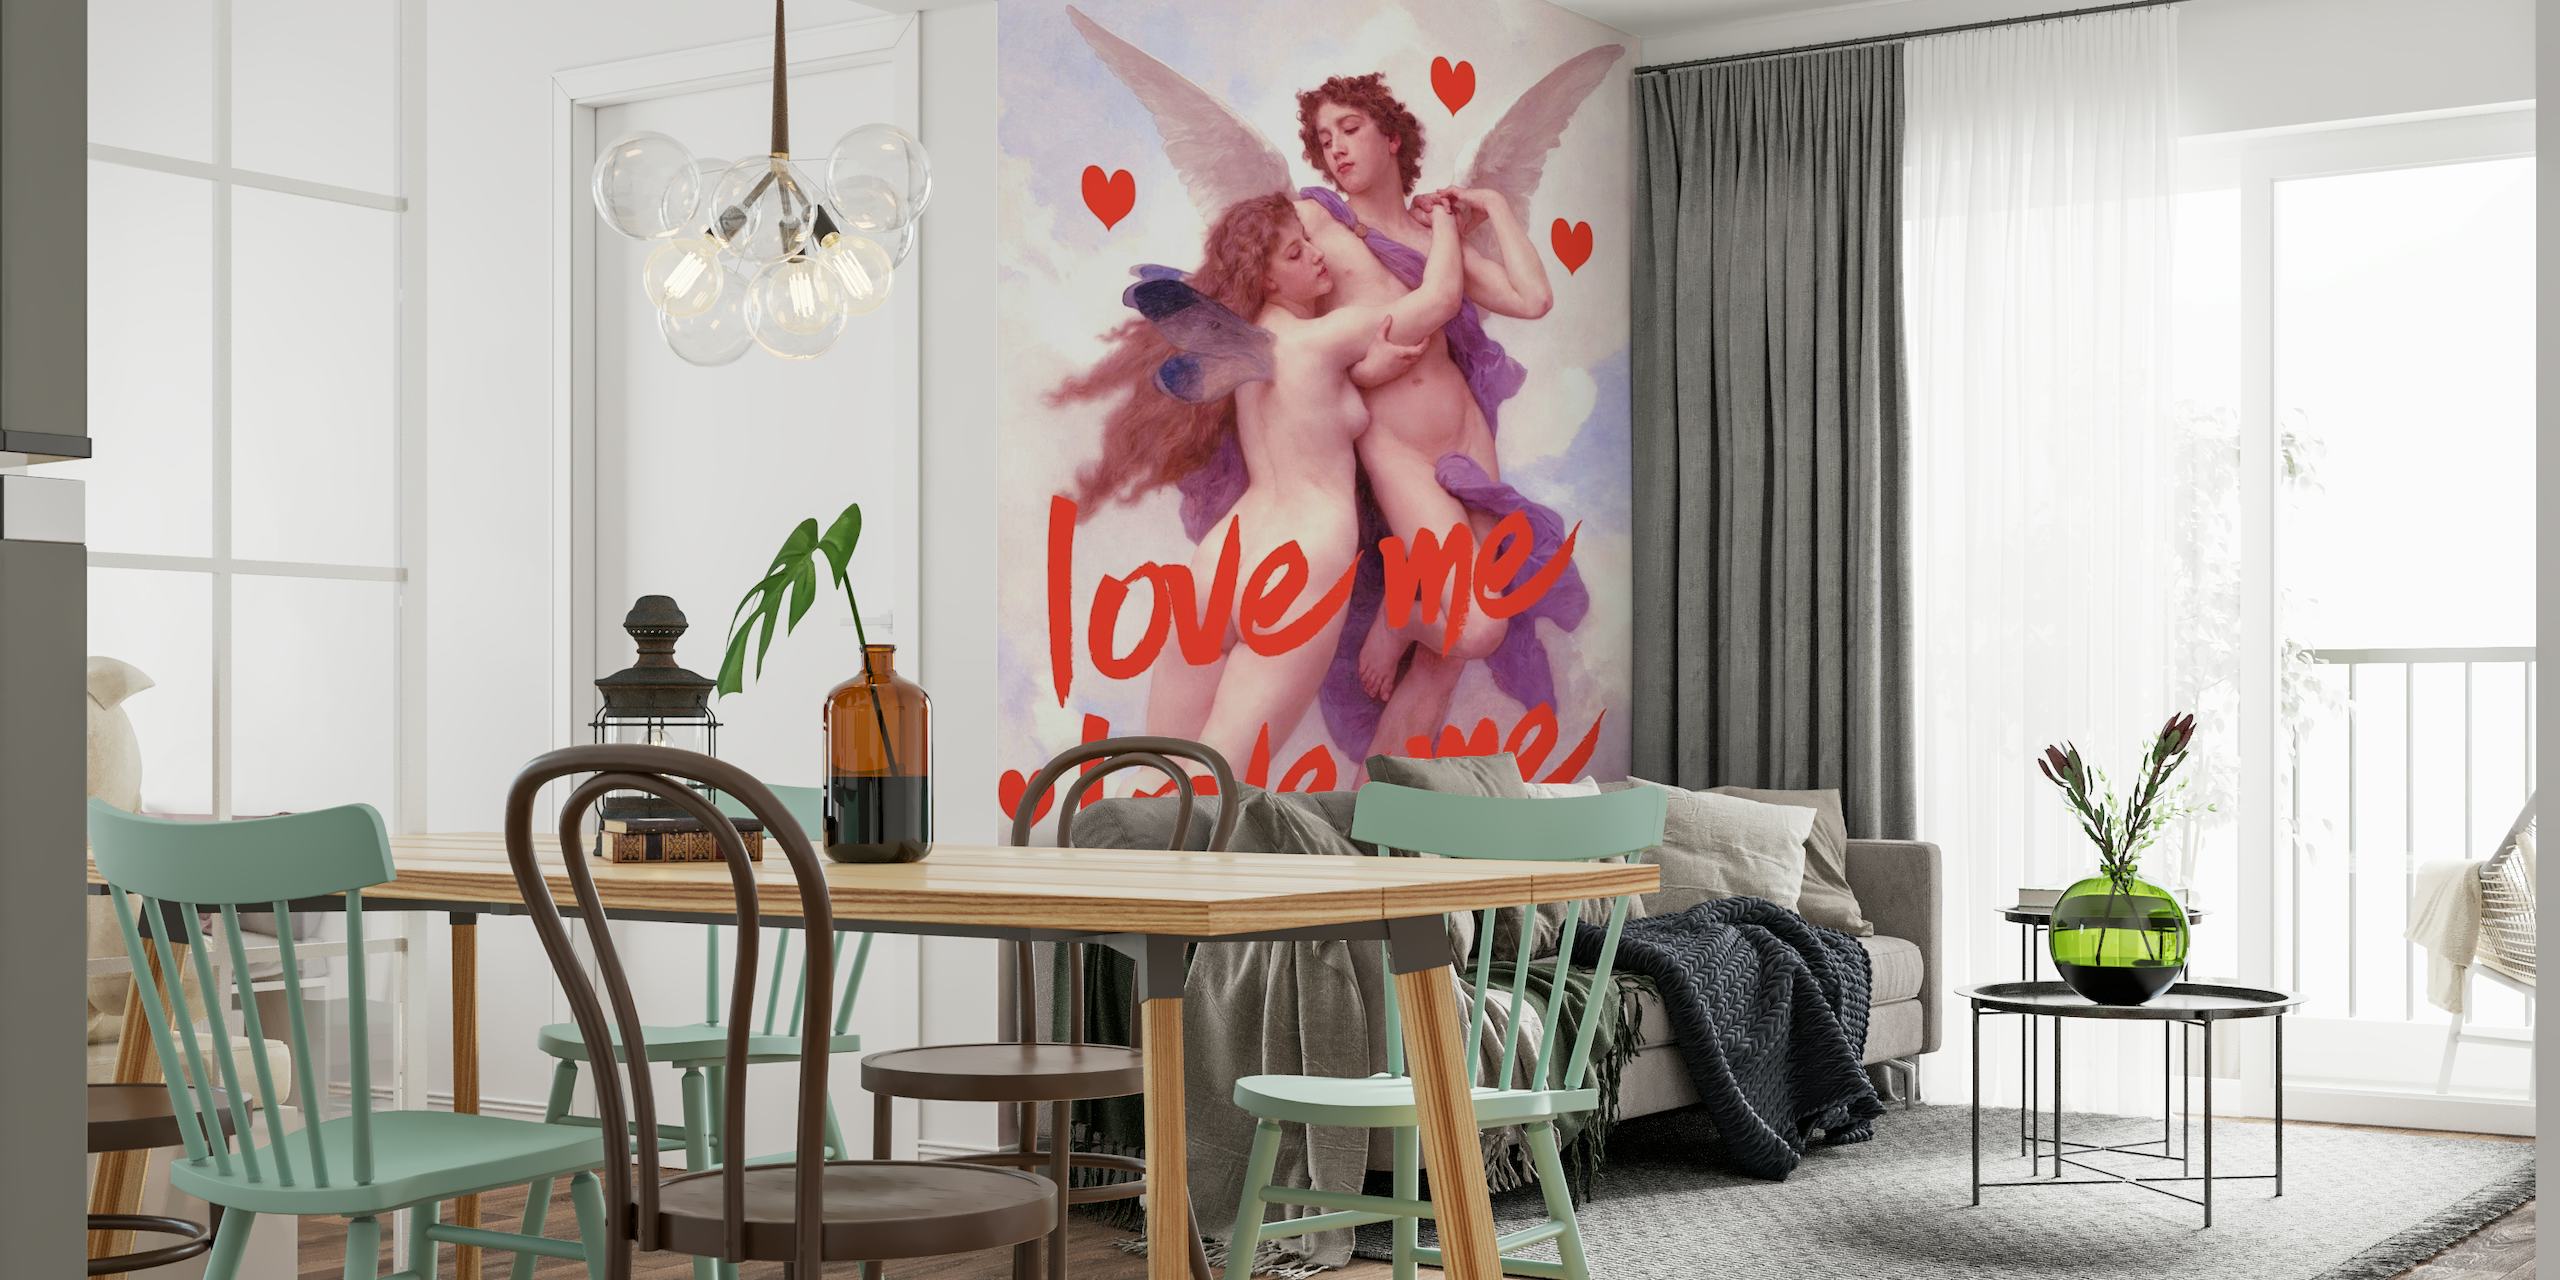 Romantisk Love Angel vægmaleri med engle og hjerter